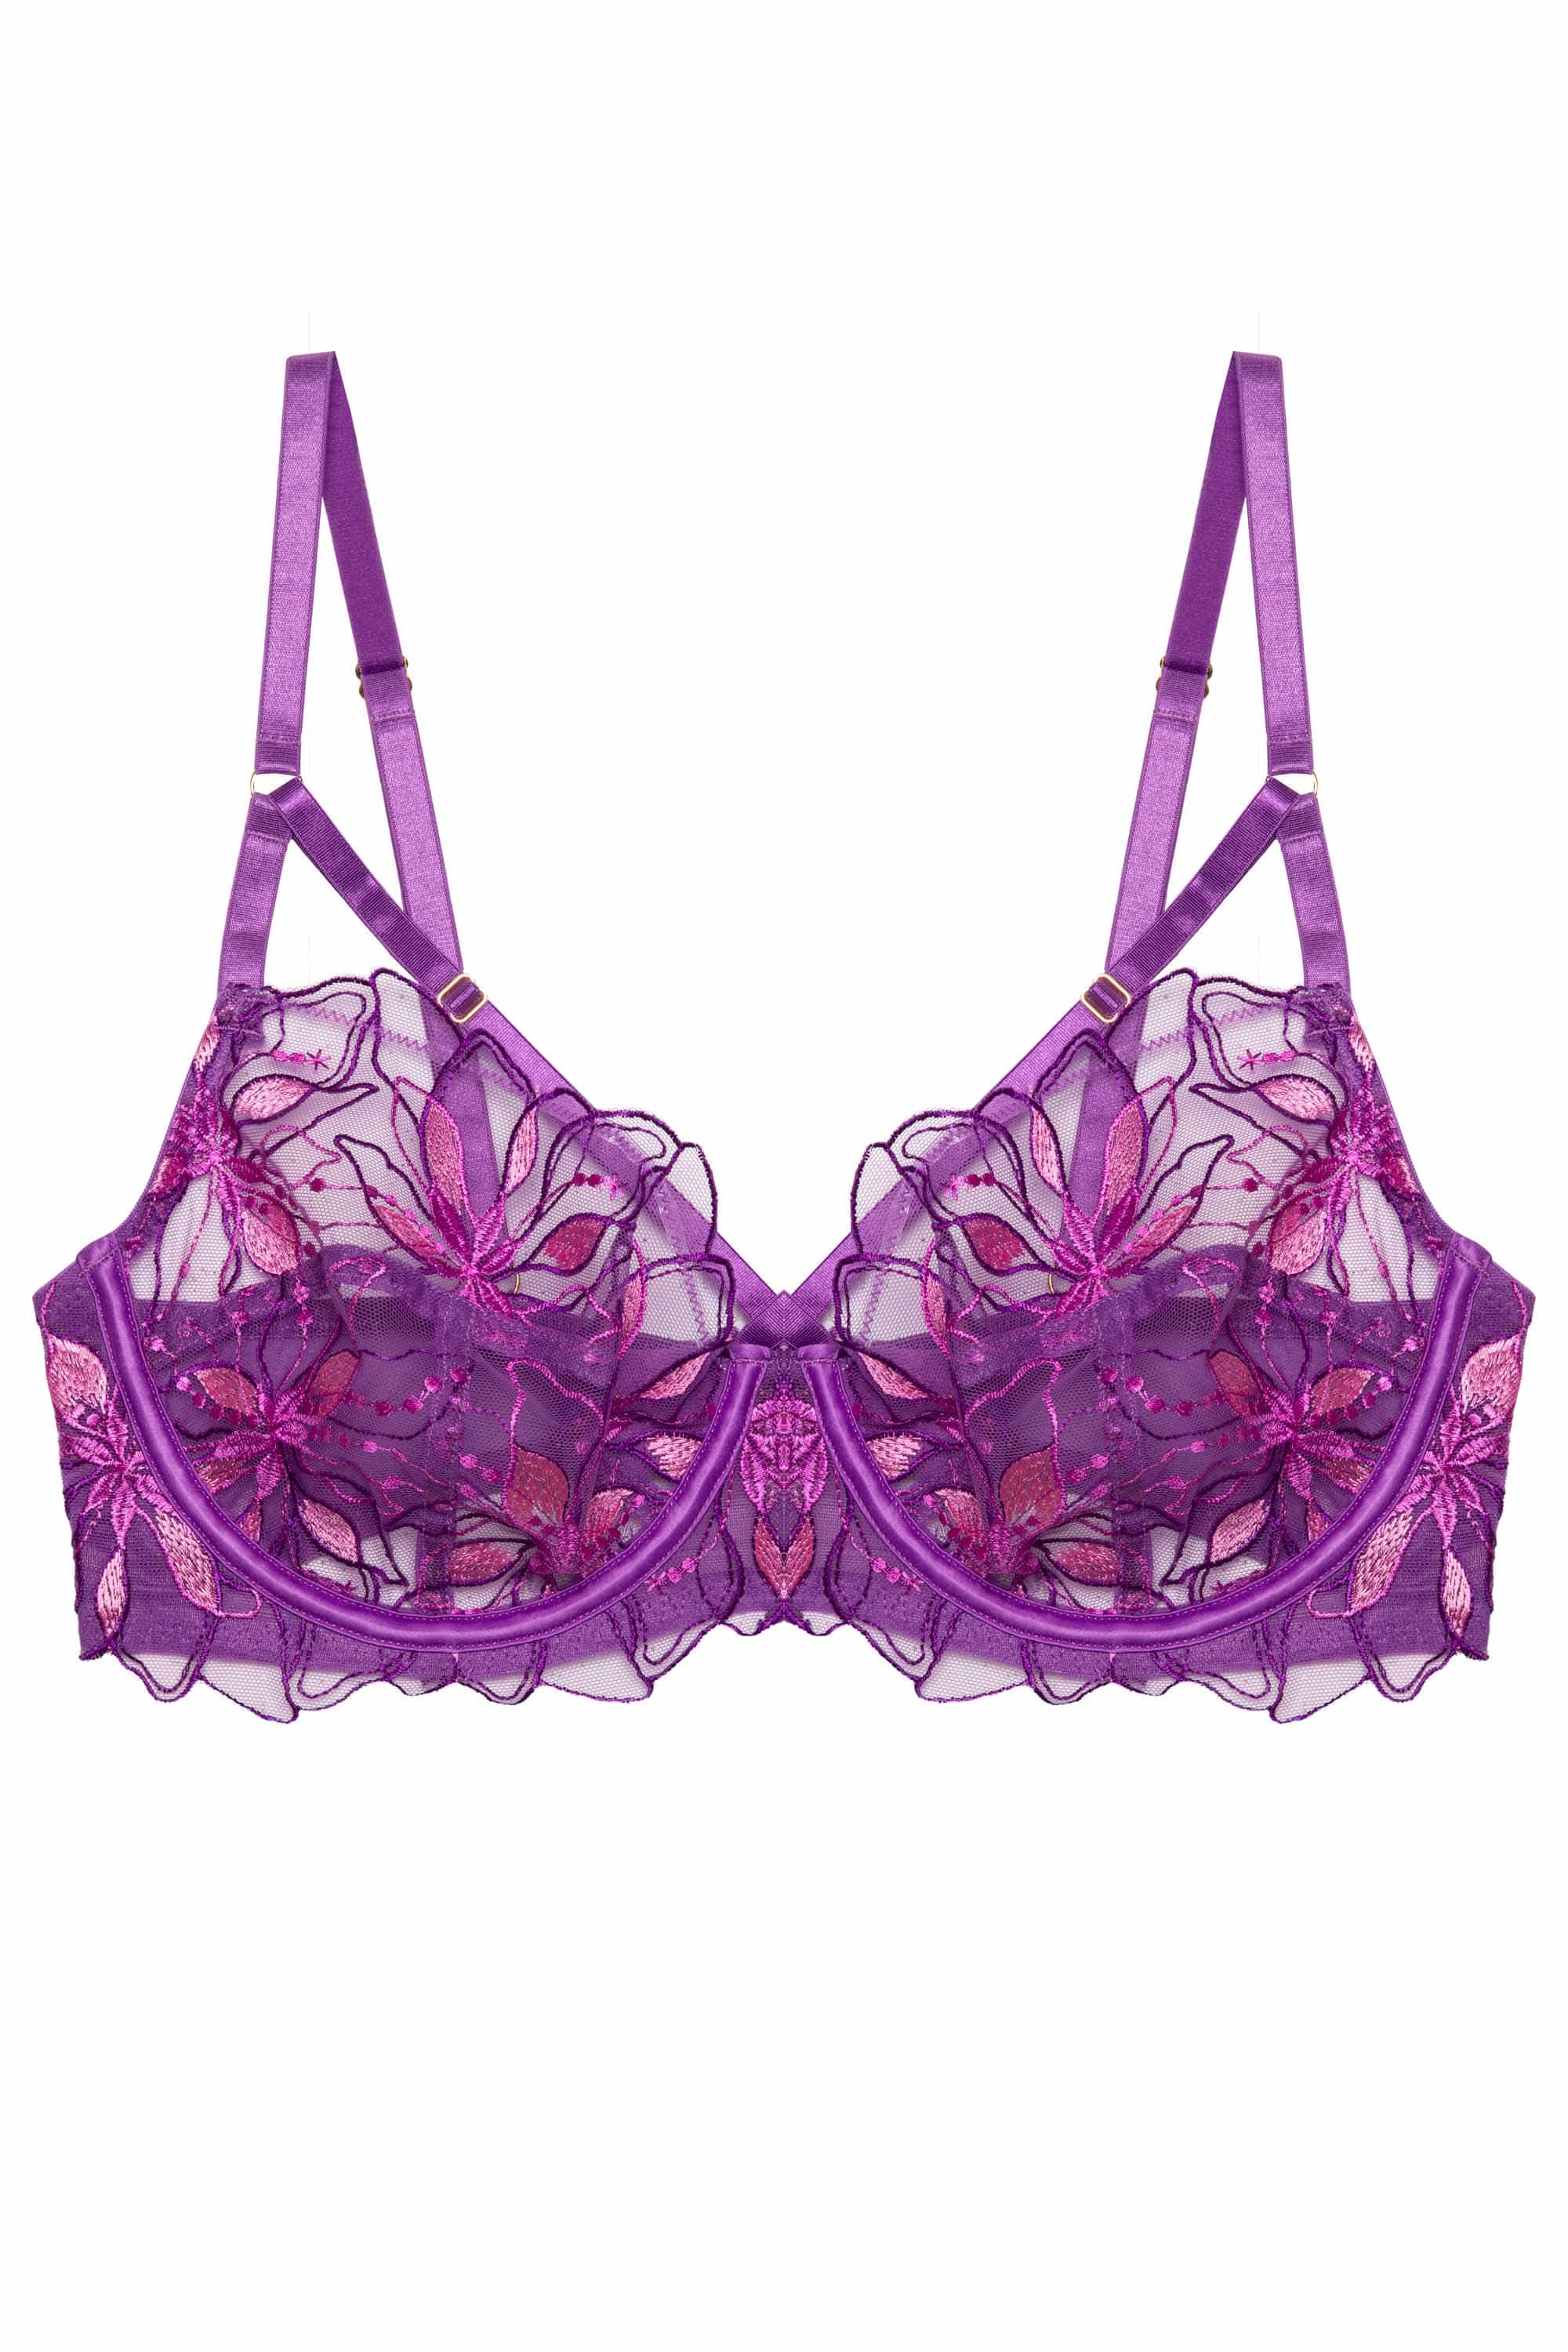 Buy PrettyCat Underwired Seamless Printeded Balconette Bra - Purple Online